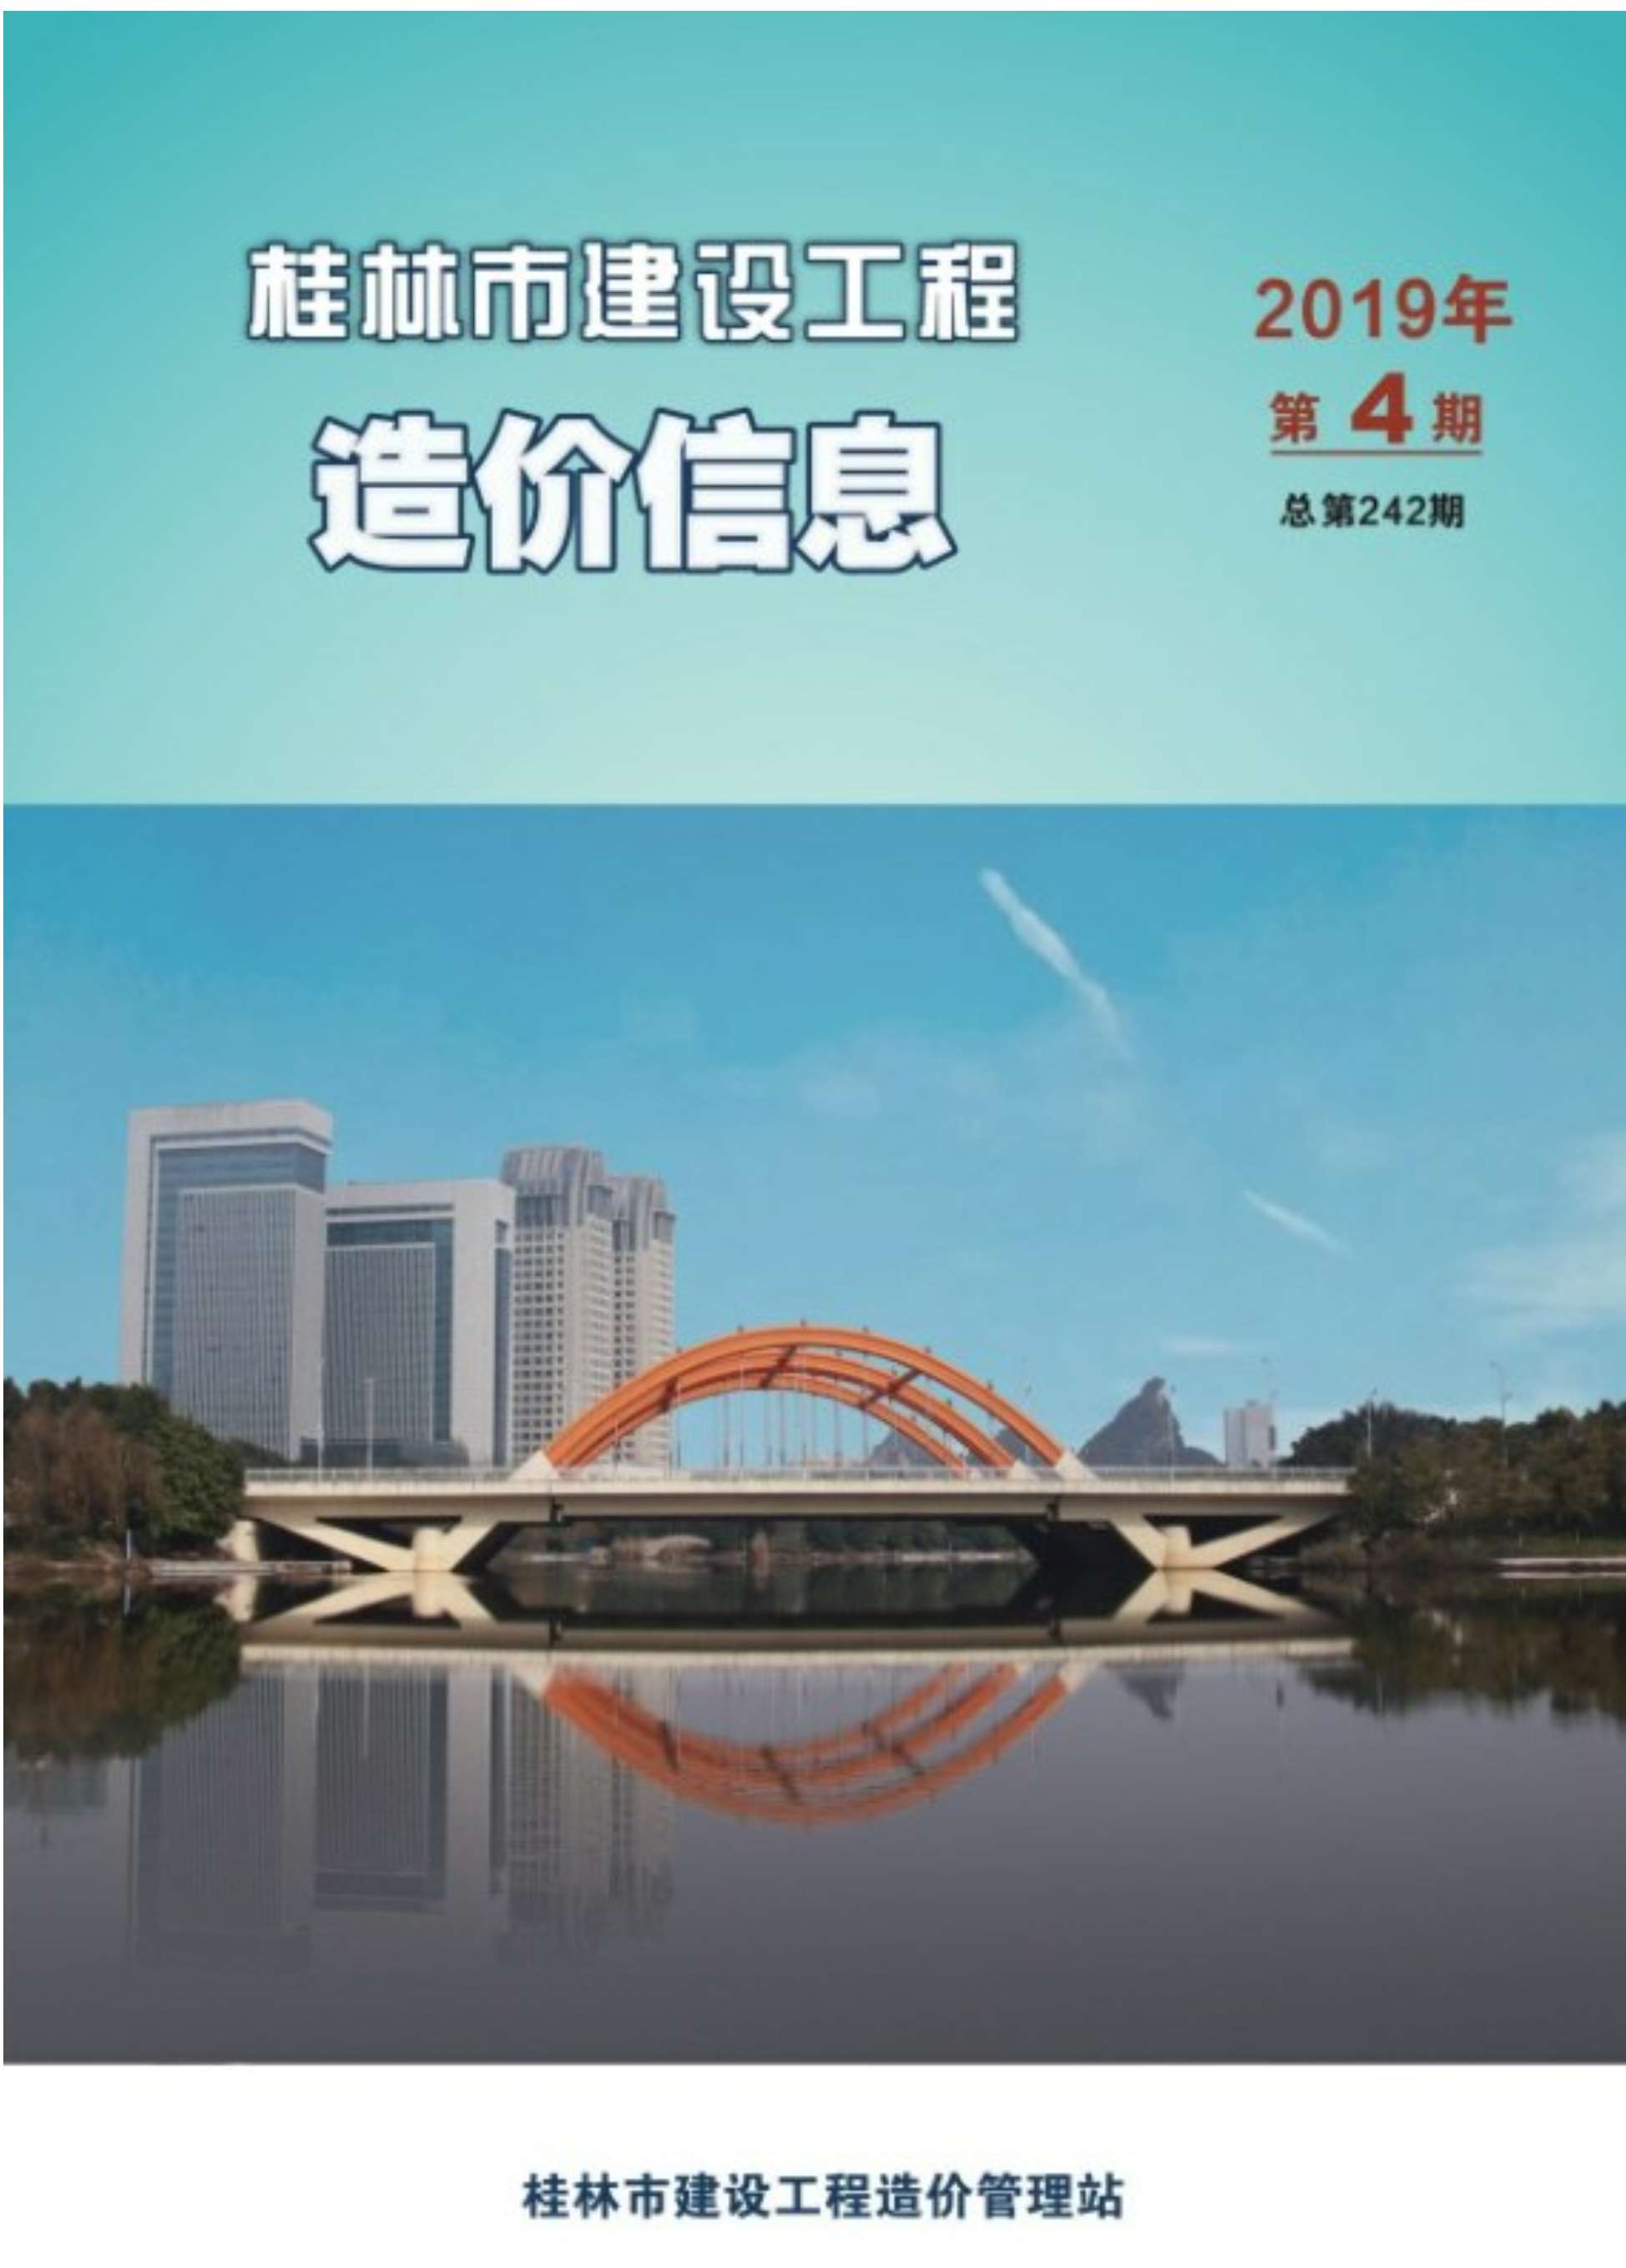 桂林市2019年4月建设工程造价信息